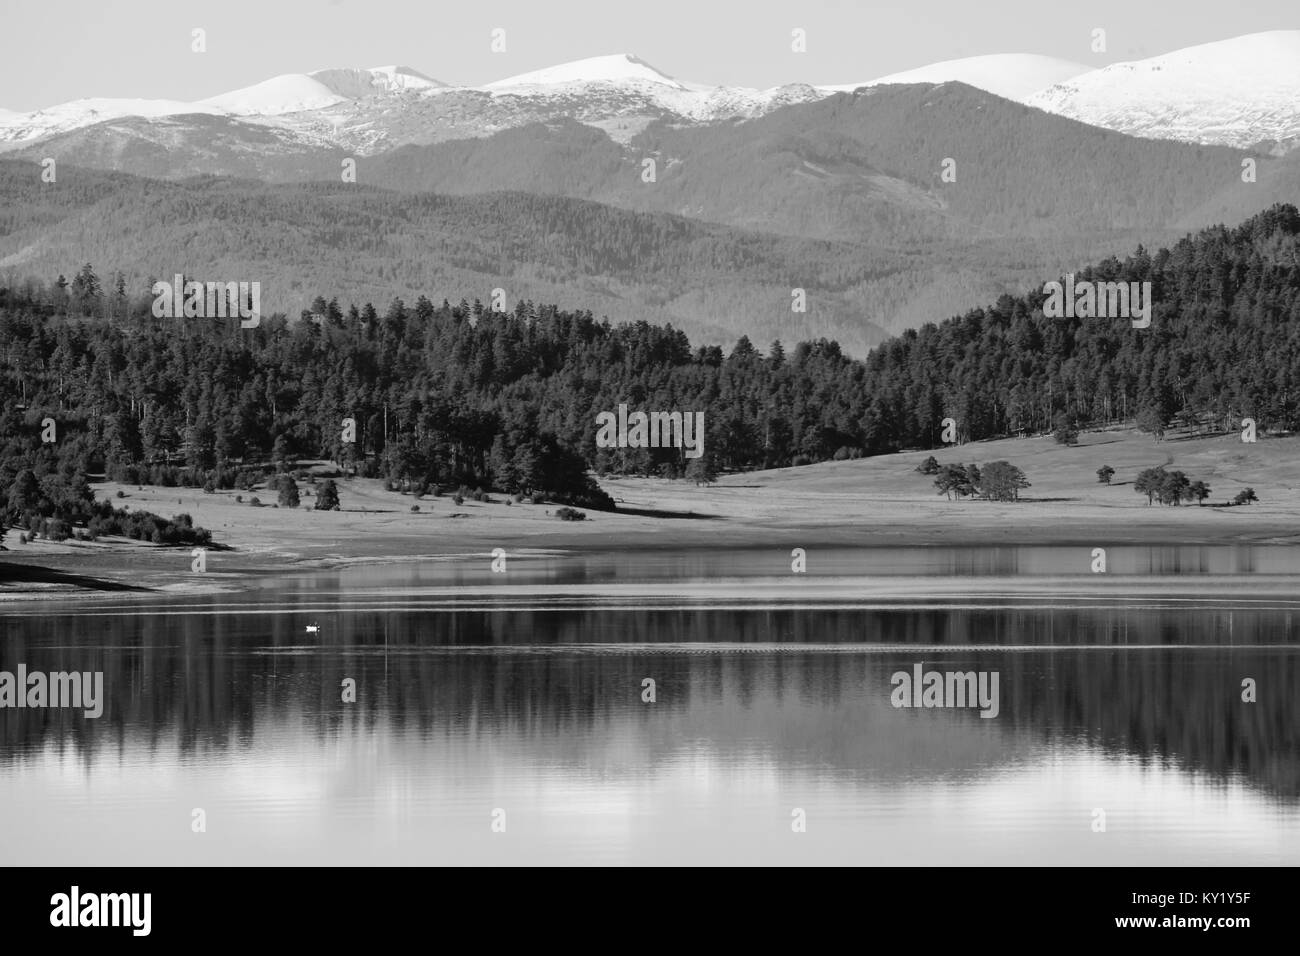 Belles réflexions de Batak dam Lake dans les montagnes bulgares, dans la brume matinale, en noir et blanc. Banque D'Images